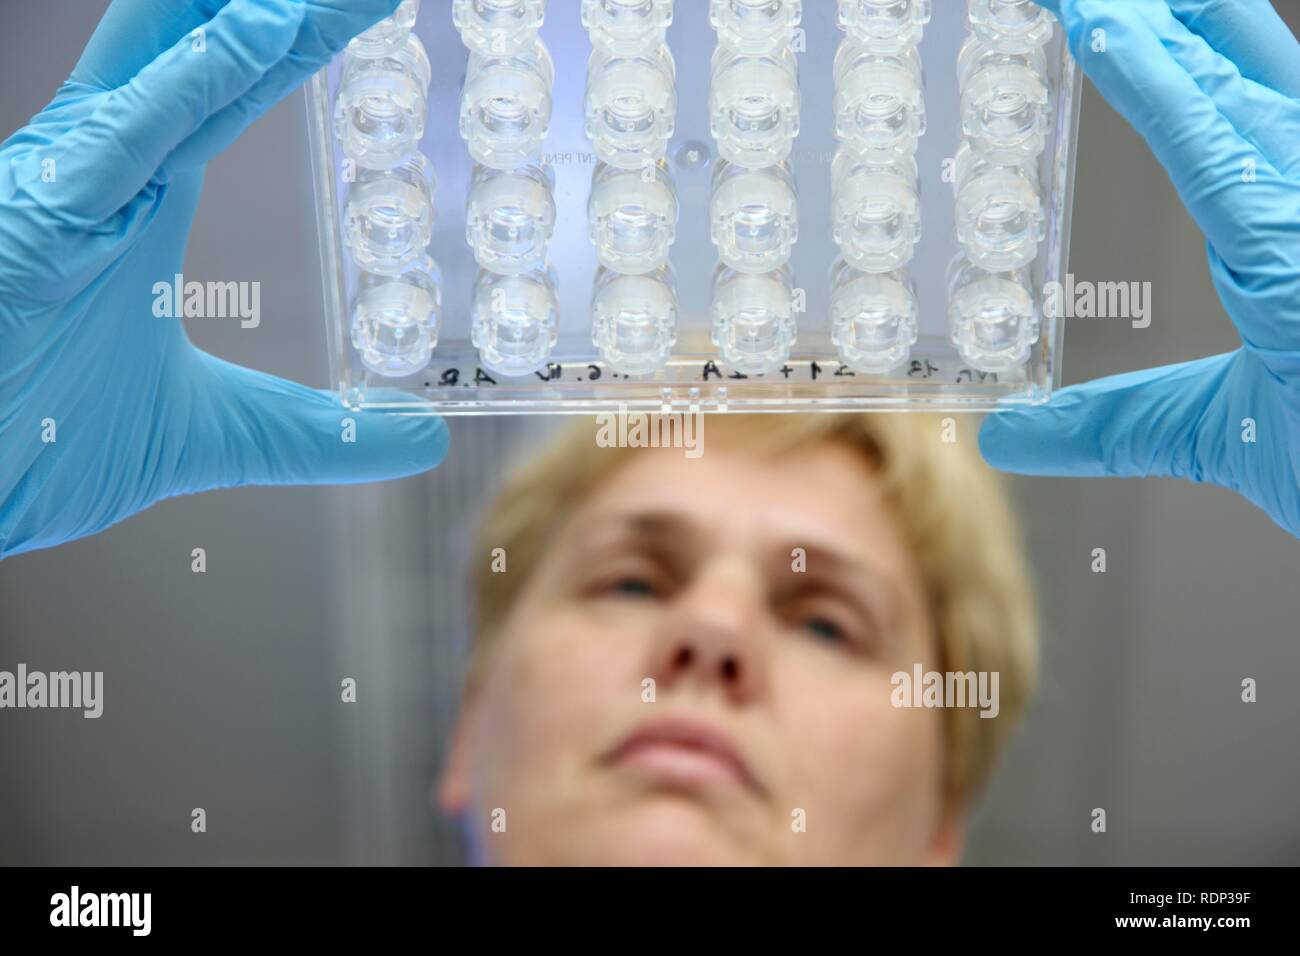 Laboratorio, uno scienziato è controllare la piastra di cristallizzazione per la cristallizzazione di proteine, centro per uso medico Foto Stock